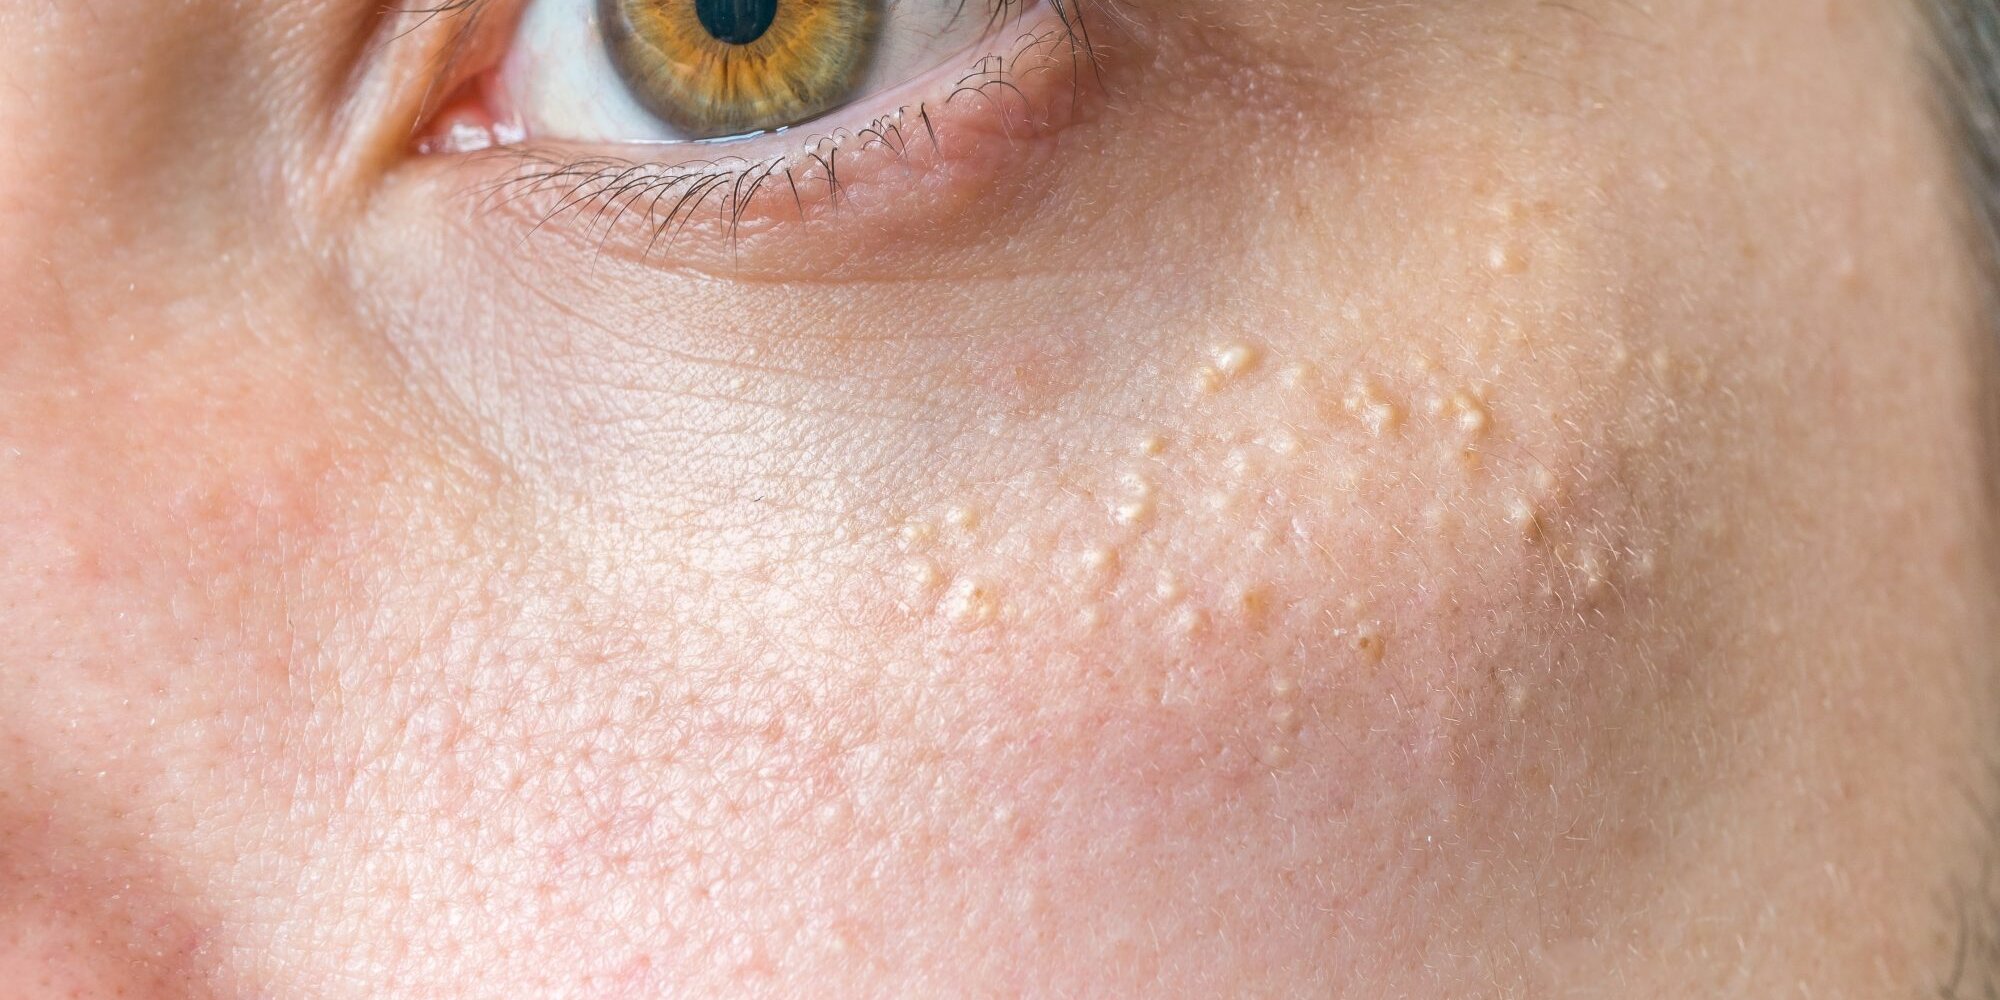 El acne es uno de los problemas mas complicados a los que tienen que enfrentarse sobre todo los jovenes a nivel de cuidar su rostro.